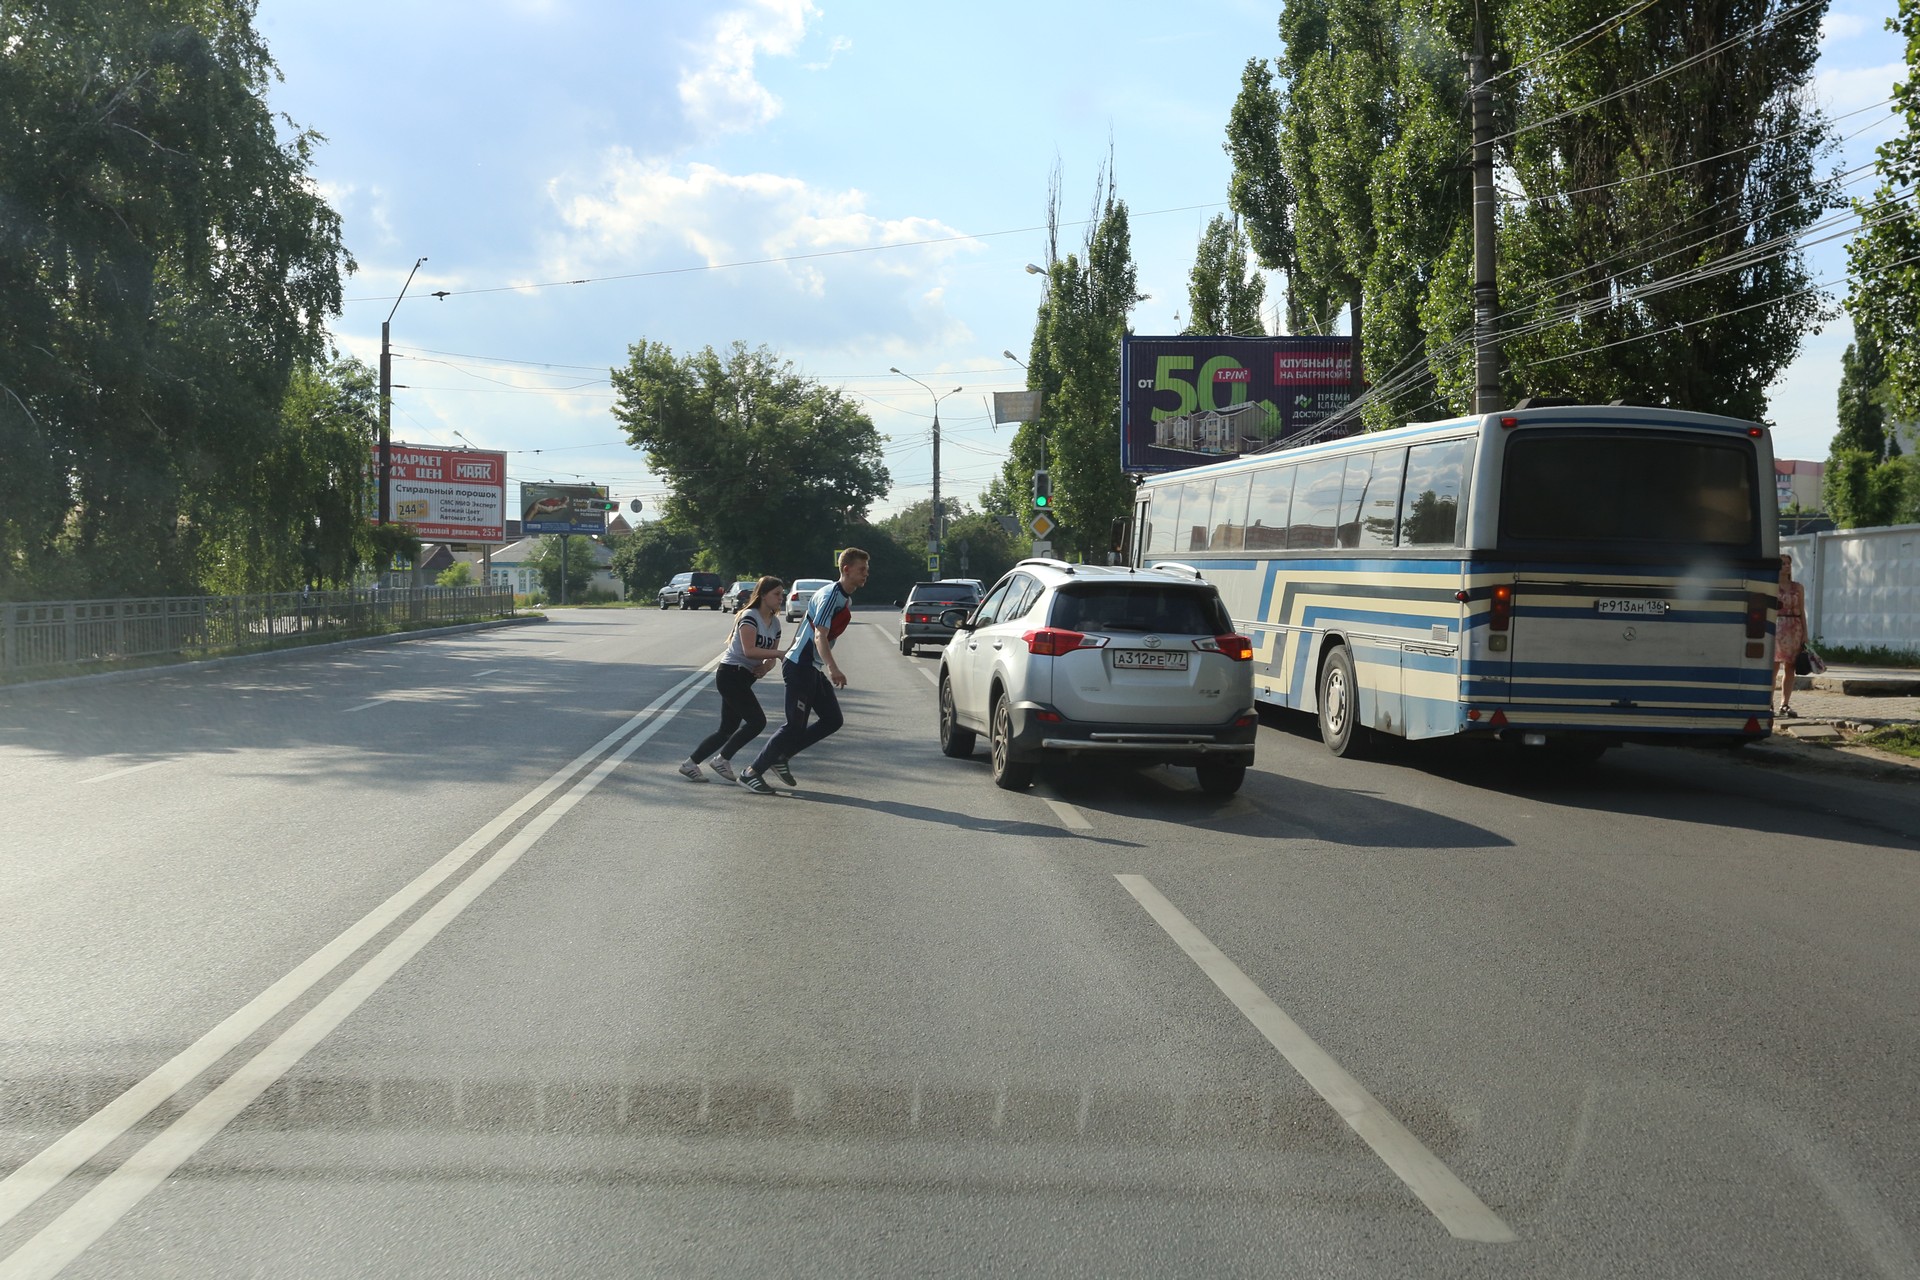 Воронежские власти не торопятся исправить ситуацию с безопасностью на дорогах города